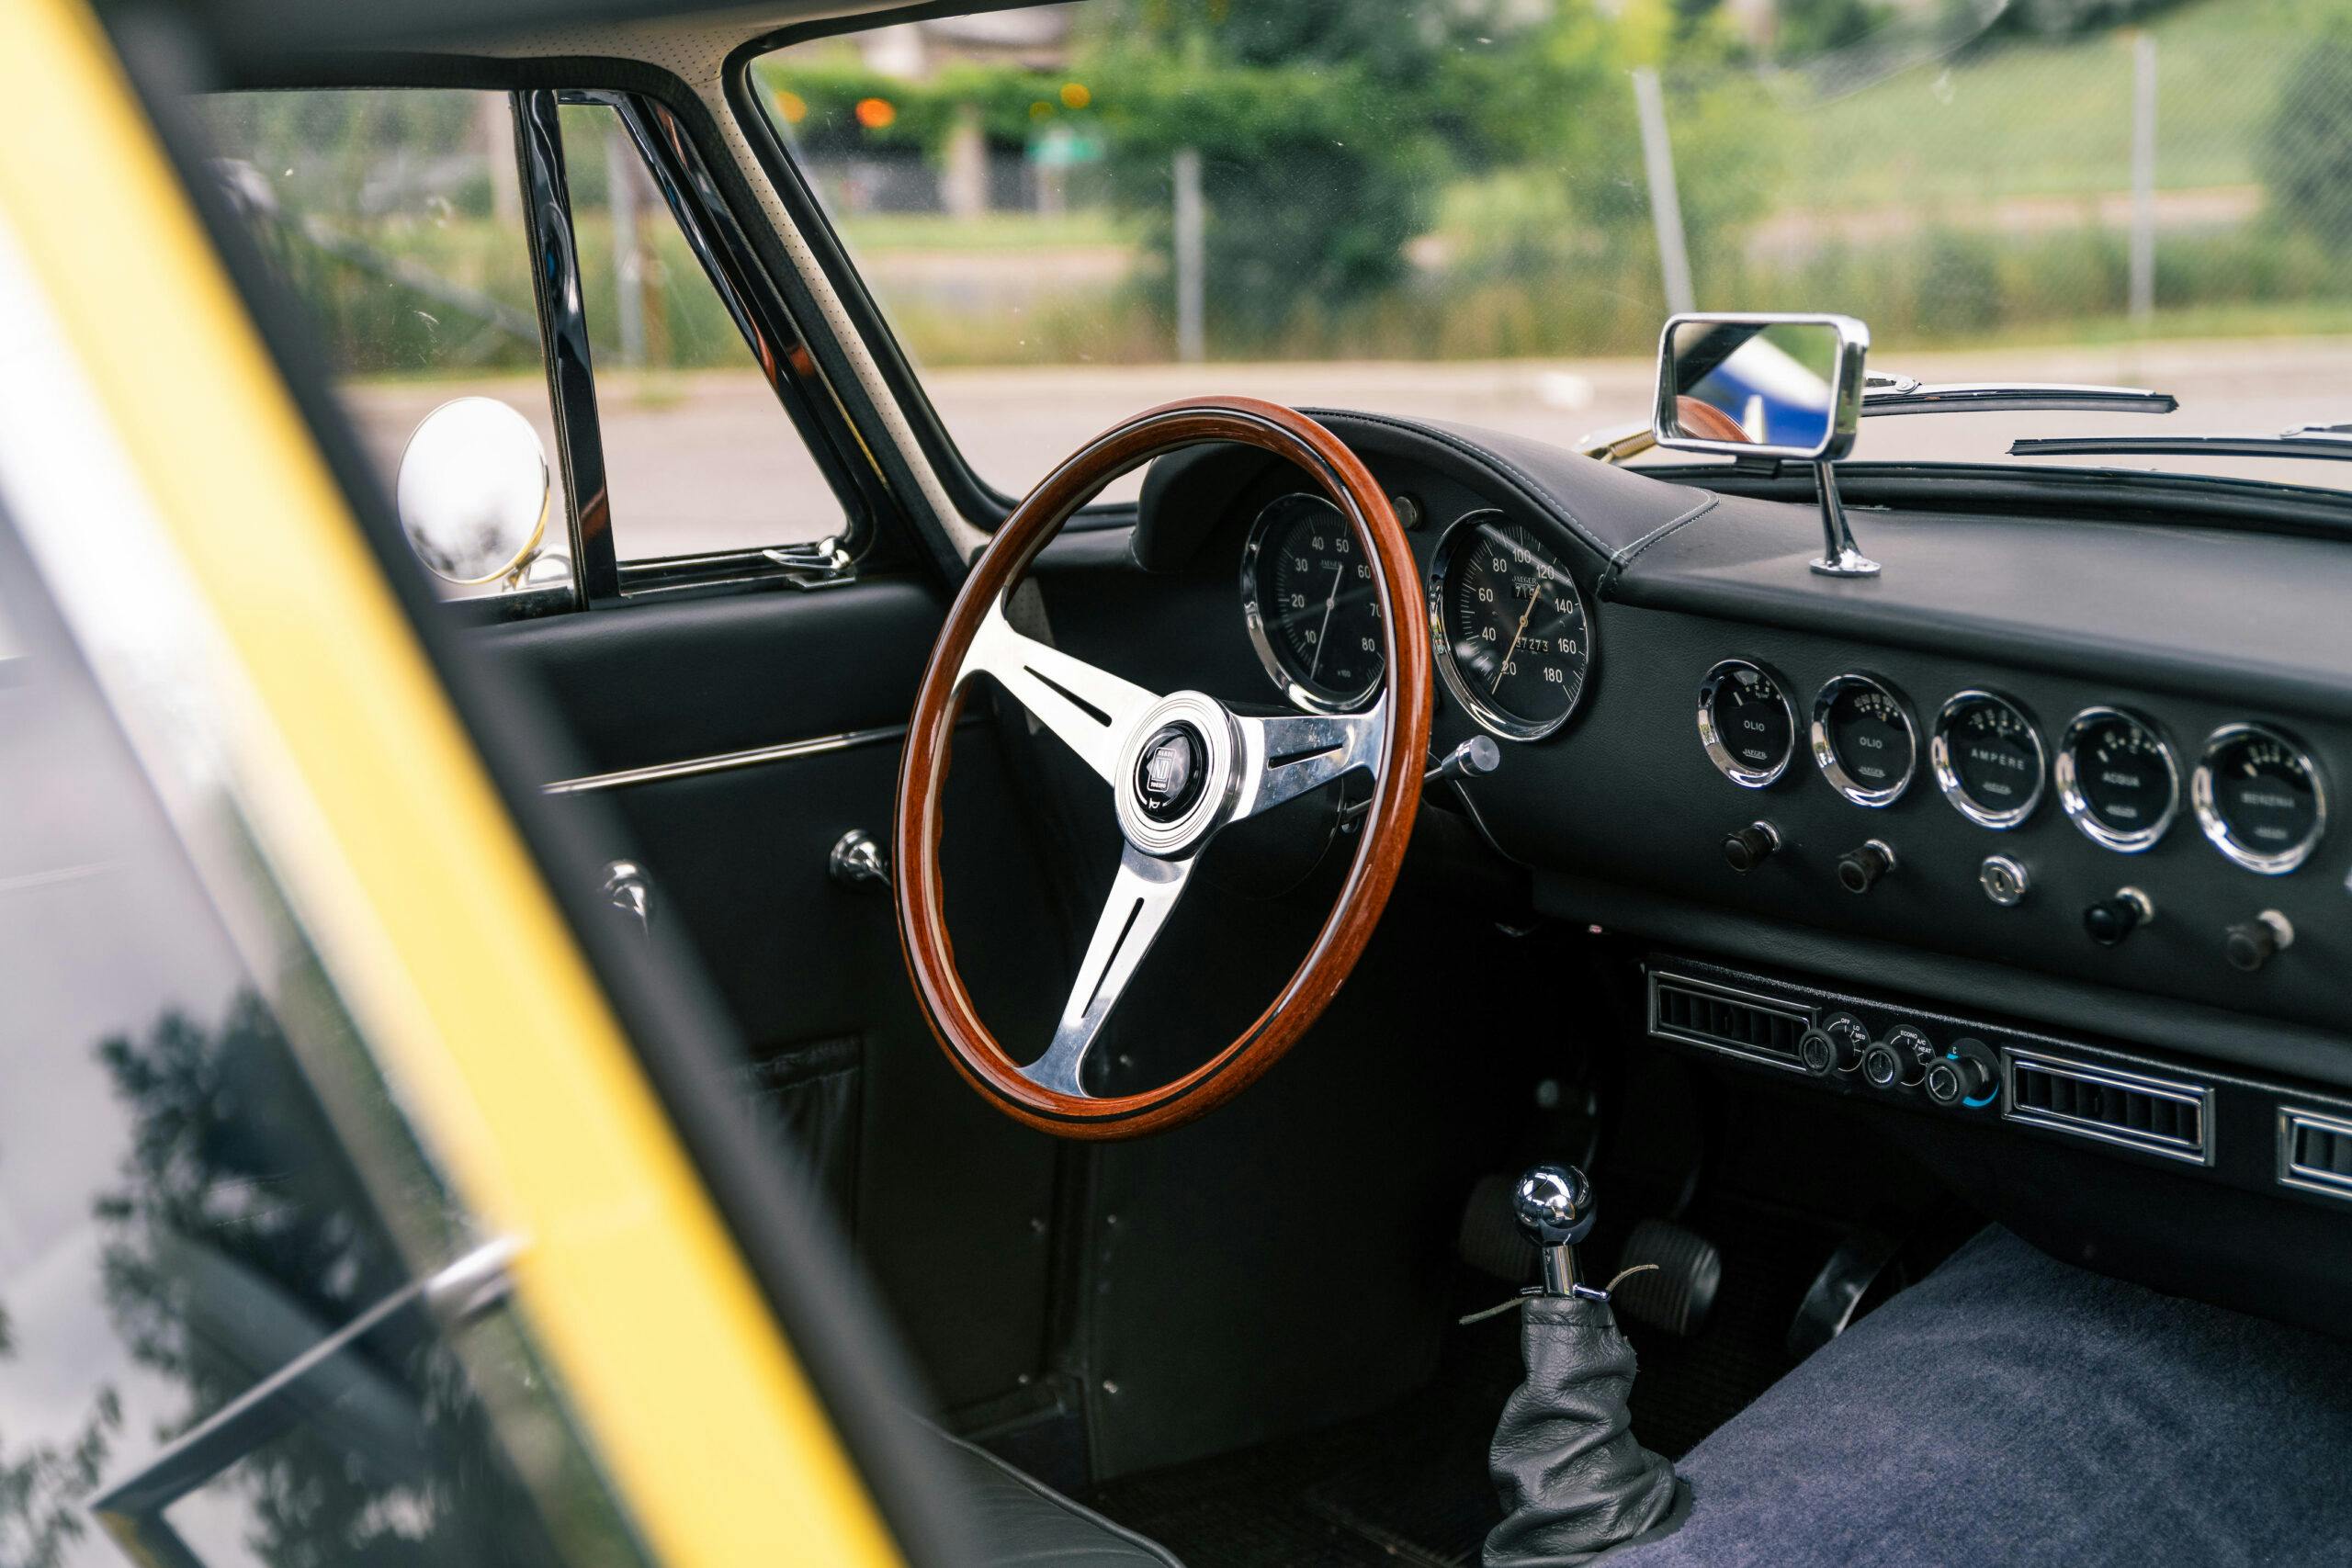 1965 Apollo GT interior steering wheel dash